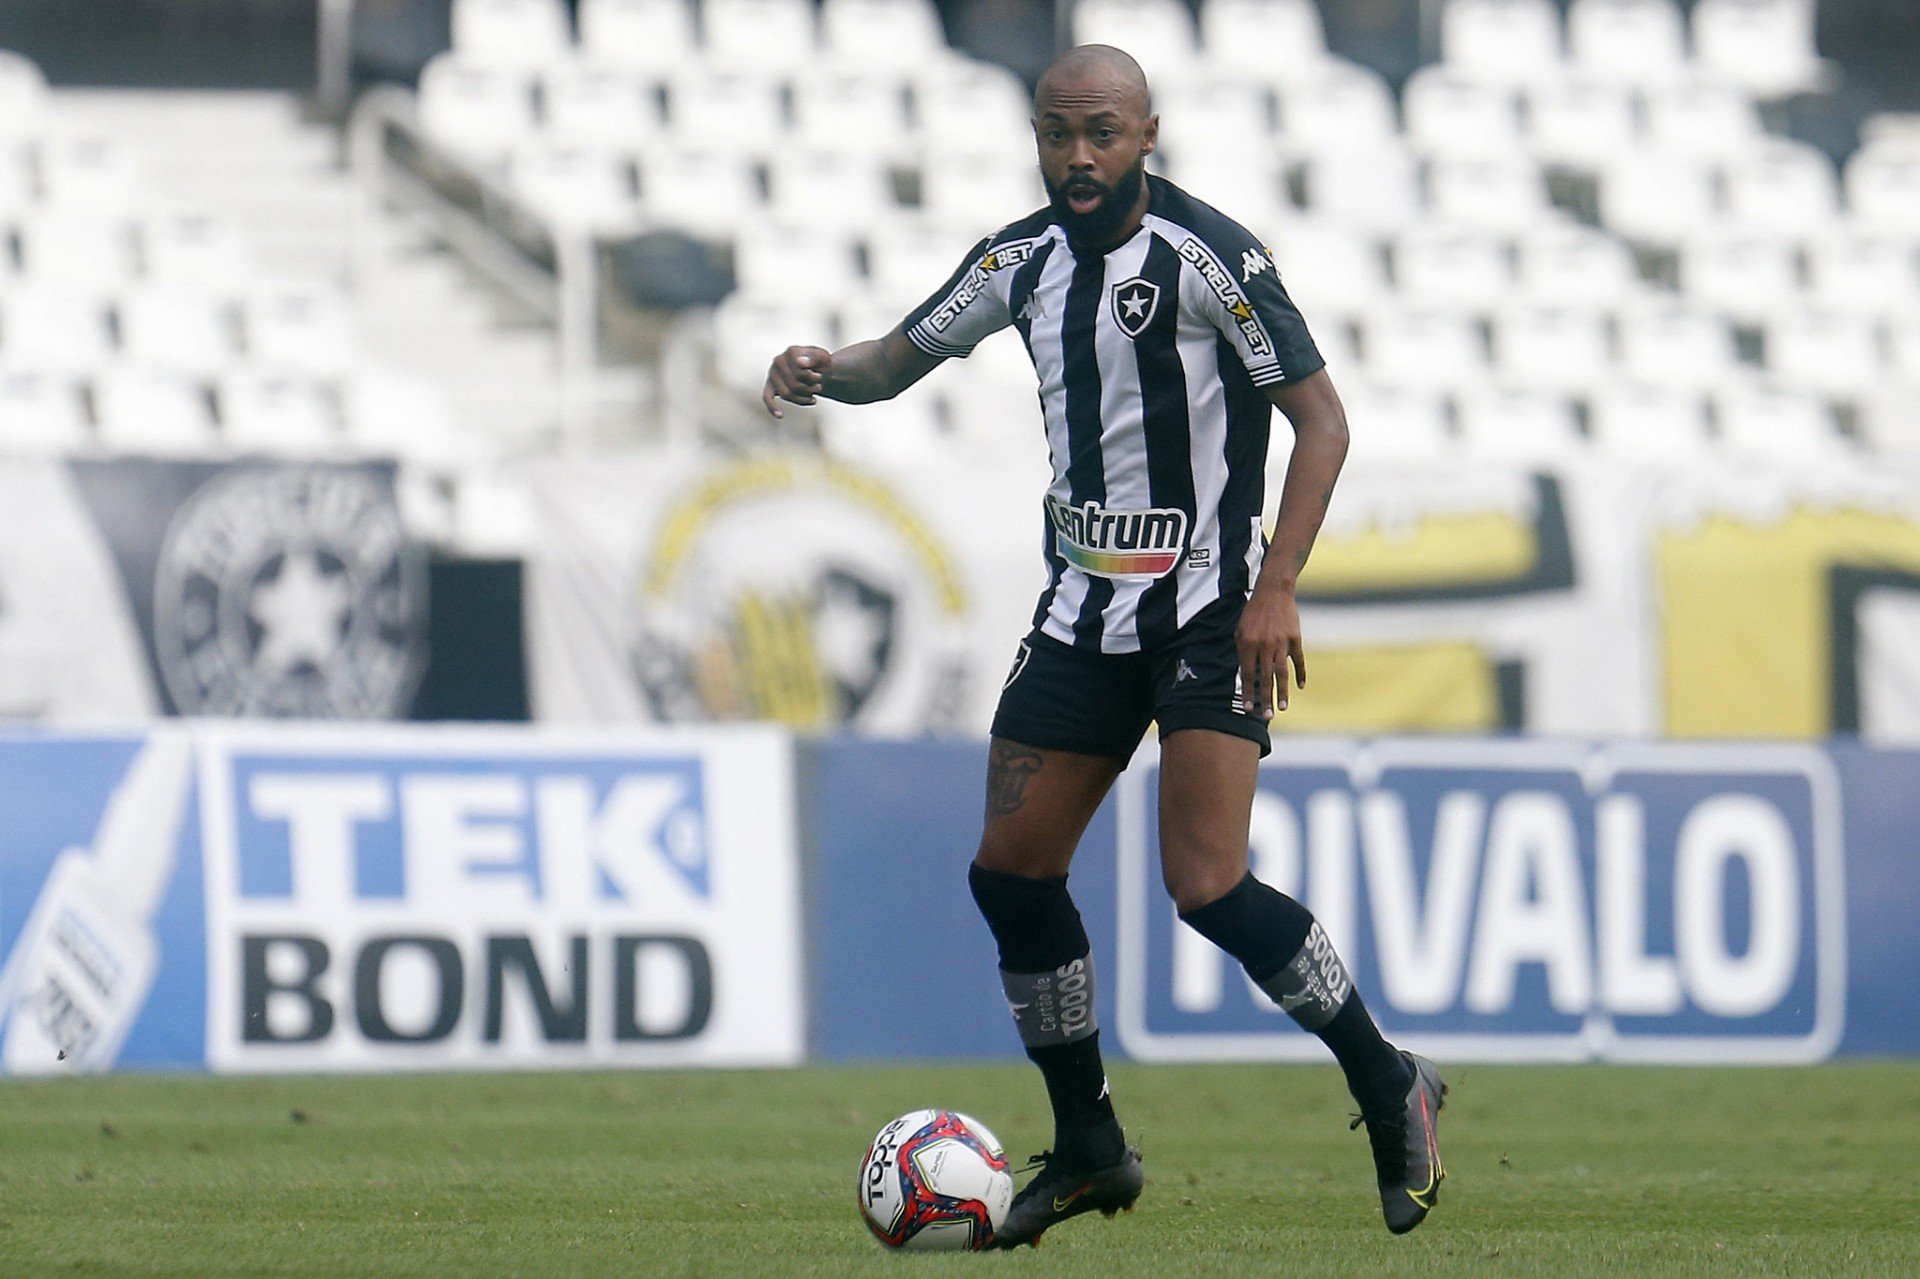 Comentarista do Grupo Globo destaca mérito de Enderson no Botafogo: ‘Trazer o Chay para o meio’